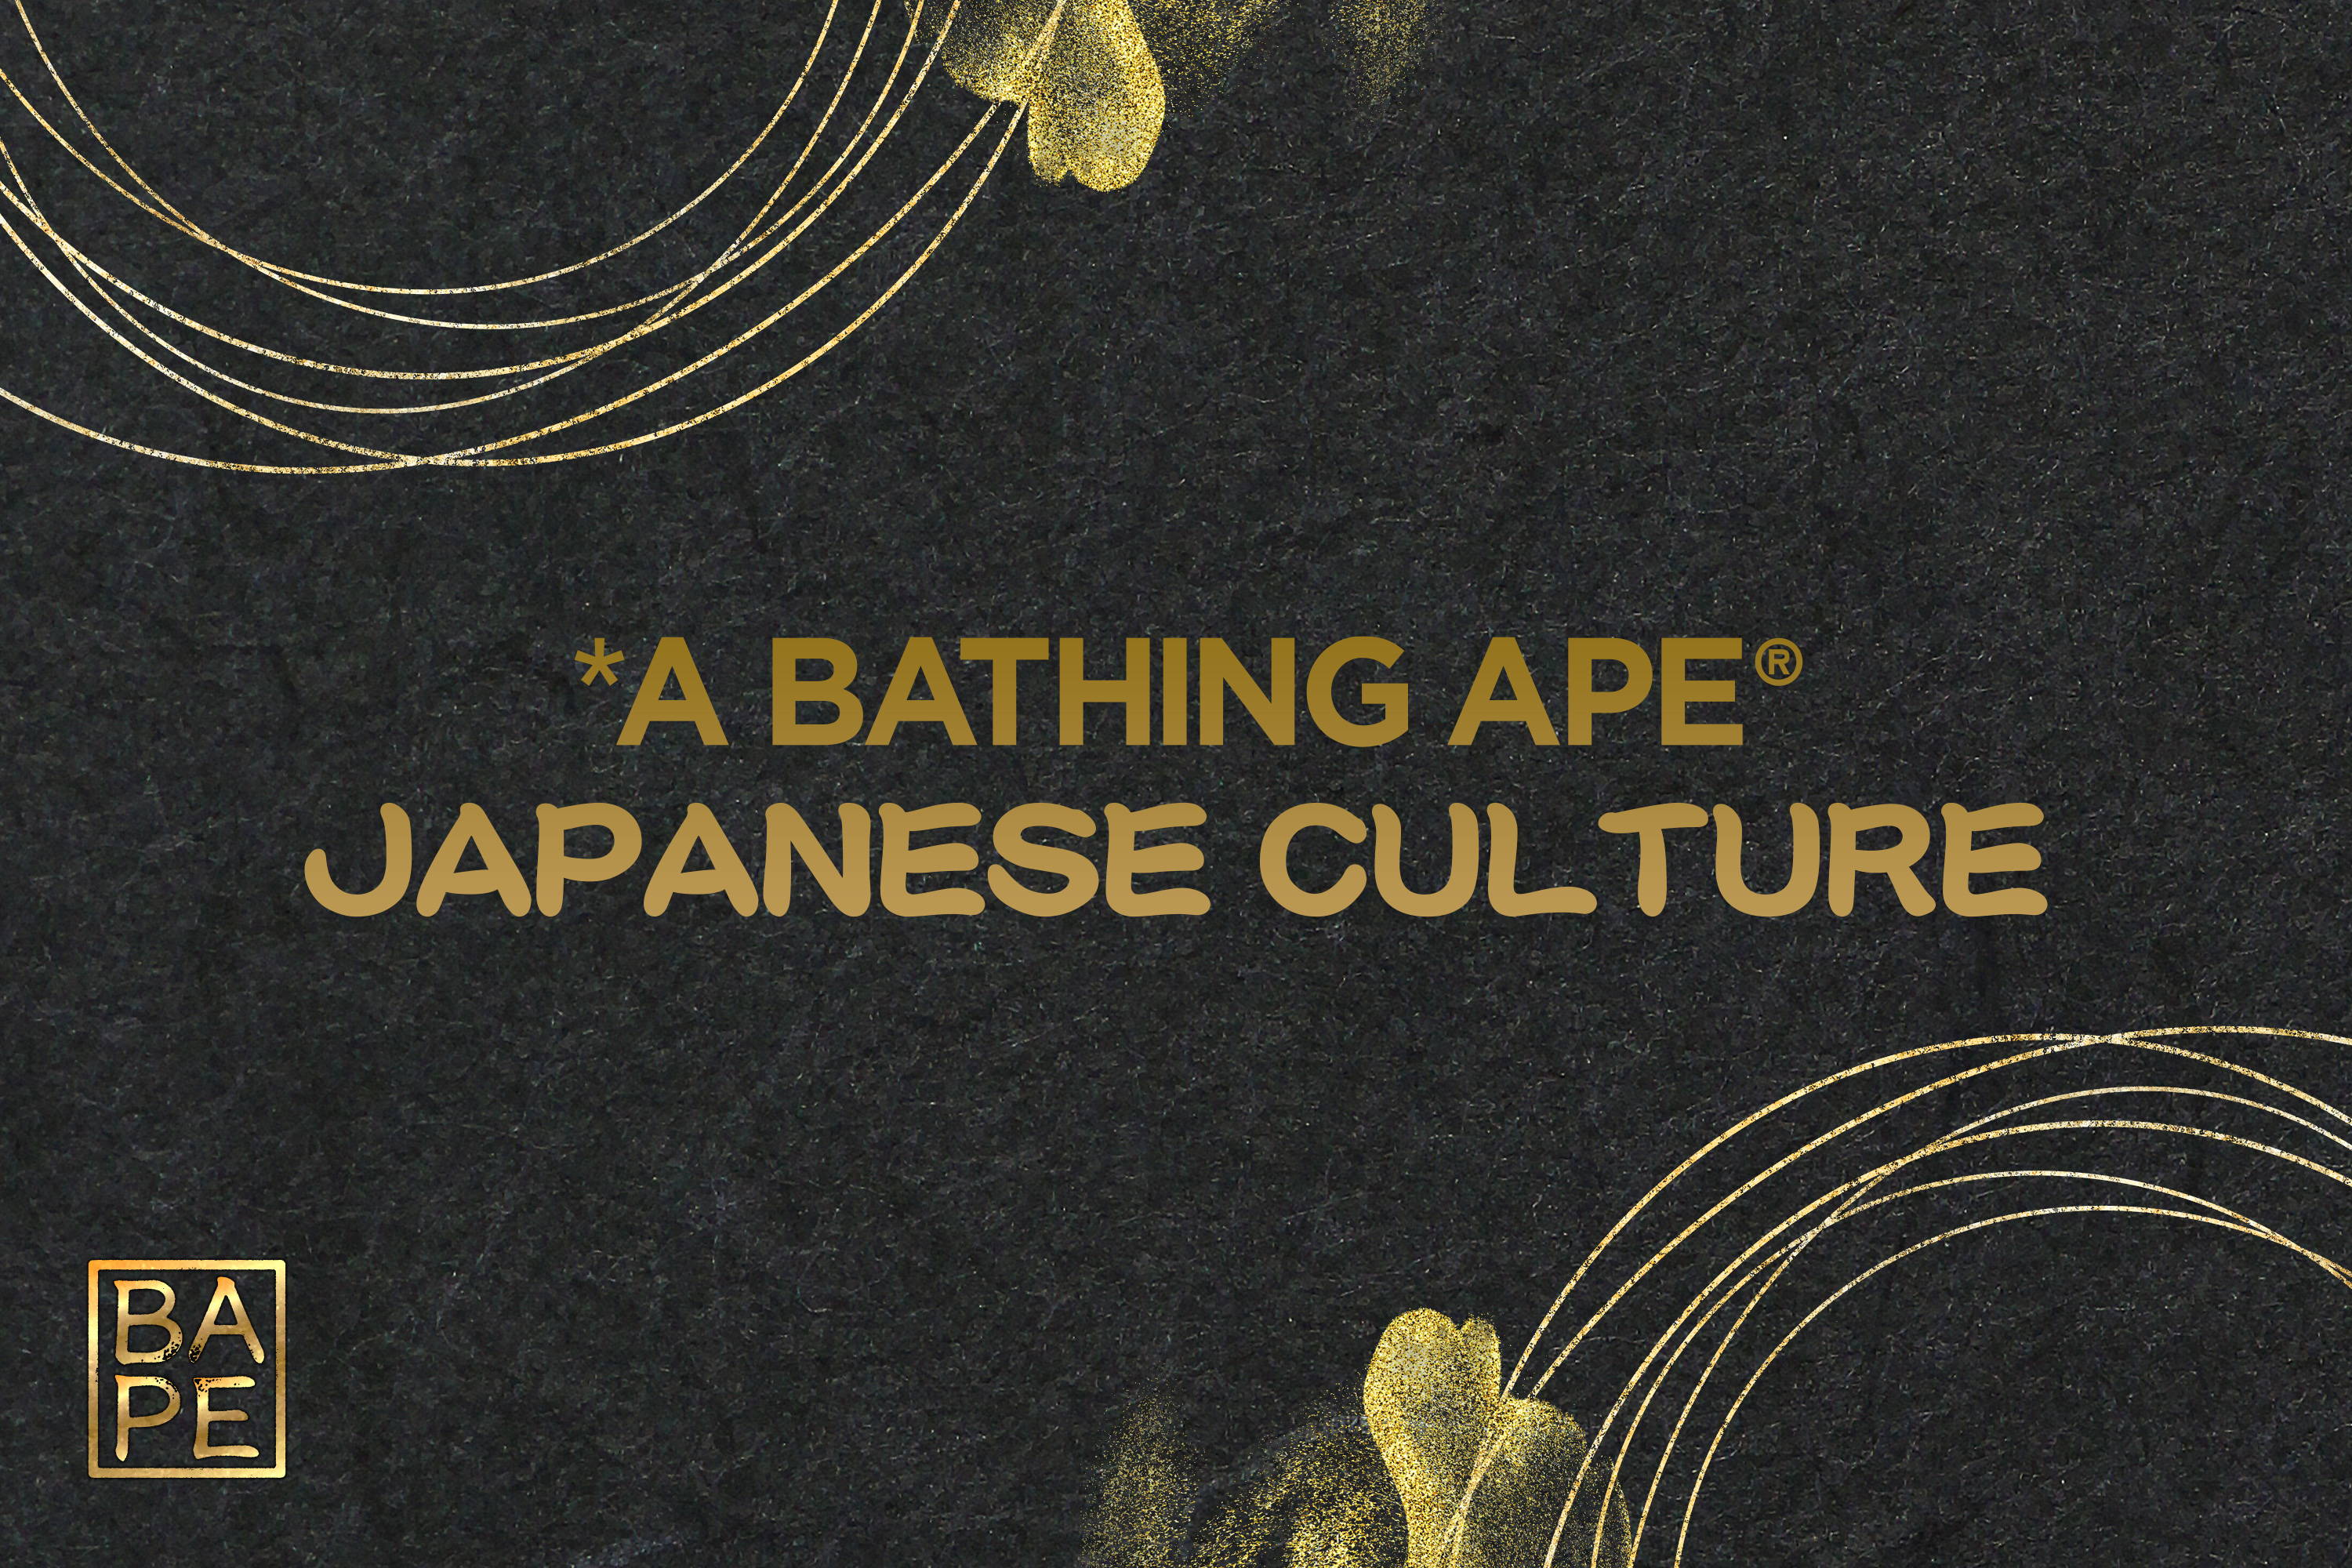 JAPANESE CULTURE | bape.com